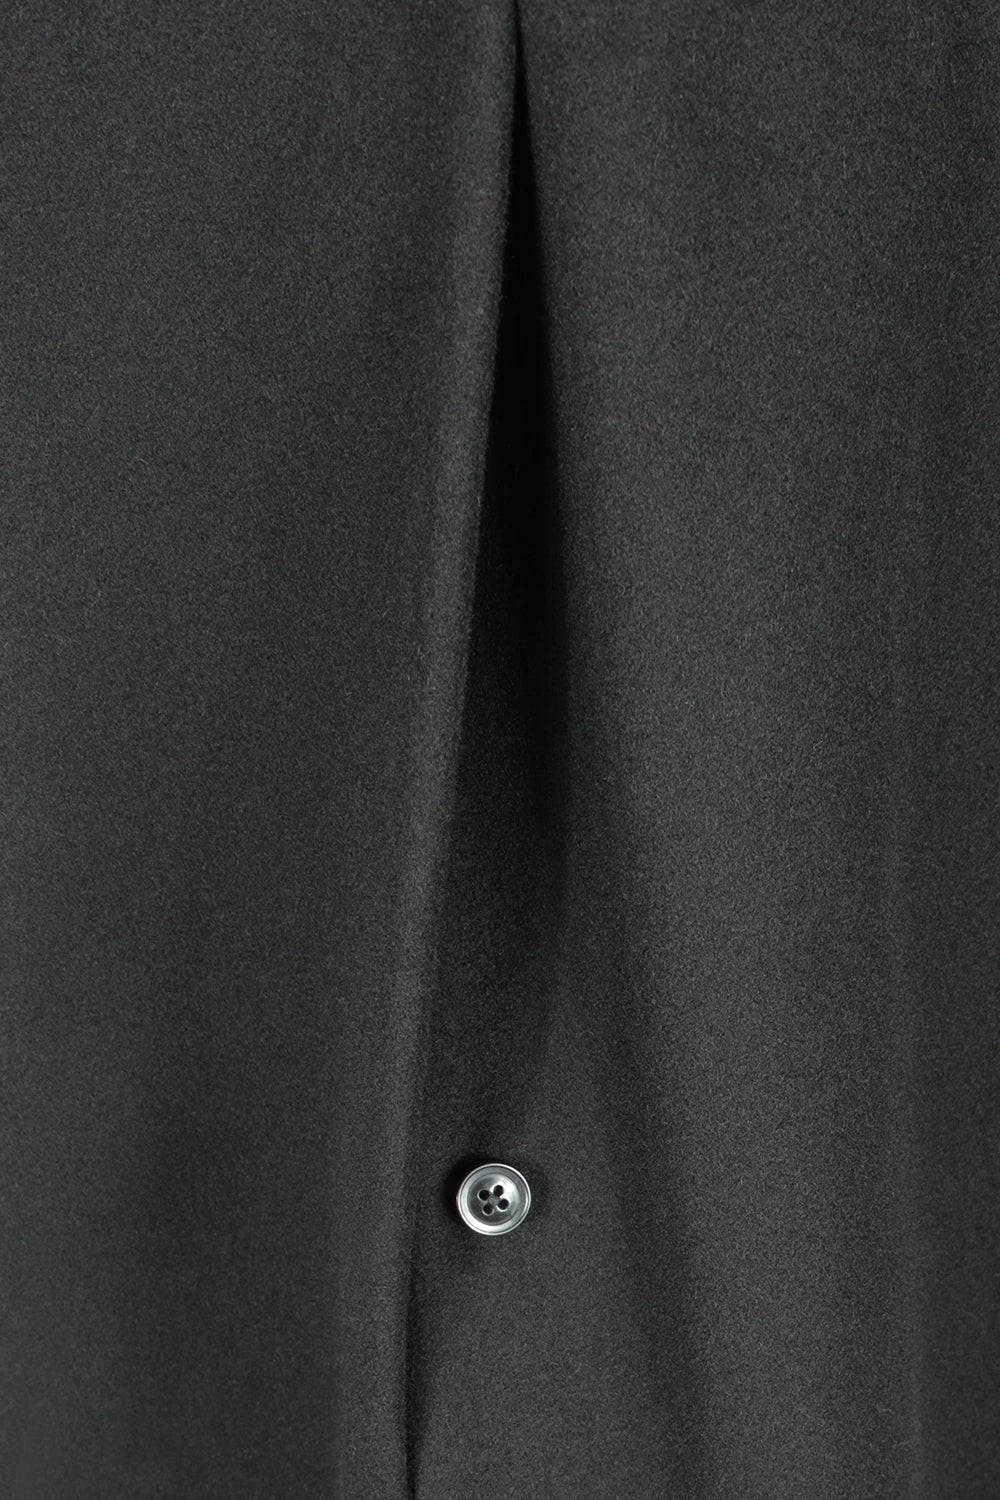 Cappotto lungo in lana nera spacco